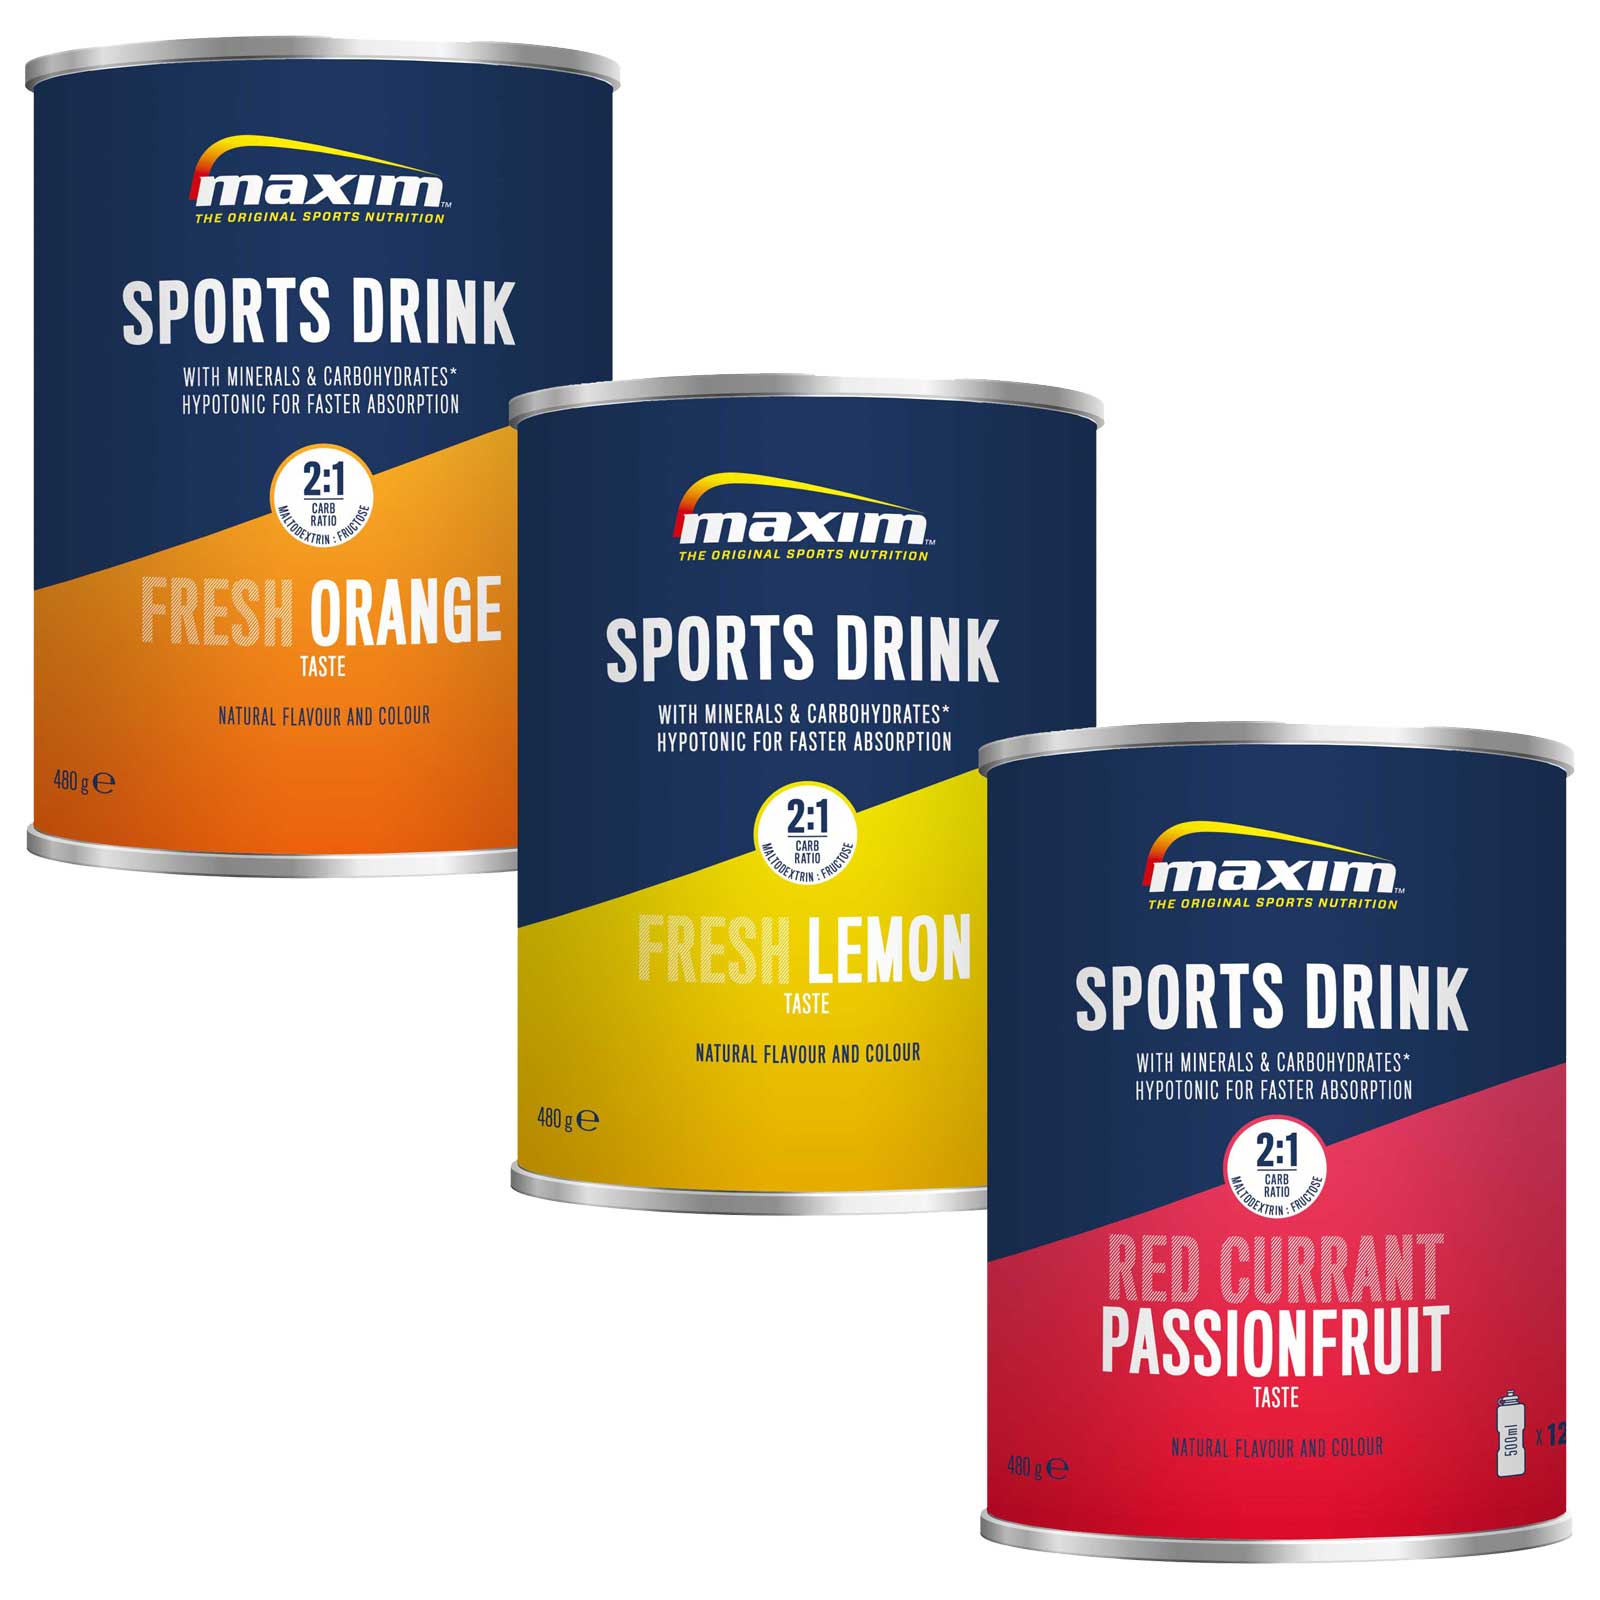 Produktbild von Maxim Sports Drink - Hypotonisches Kohlenhydrat-Getränkepulver - 480g Dose